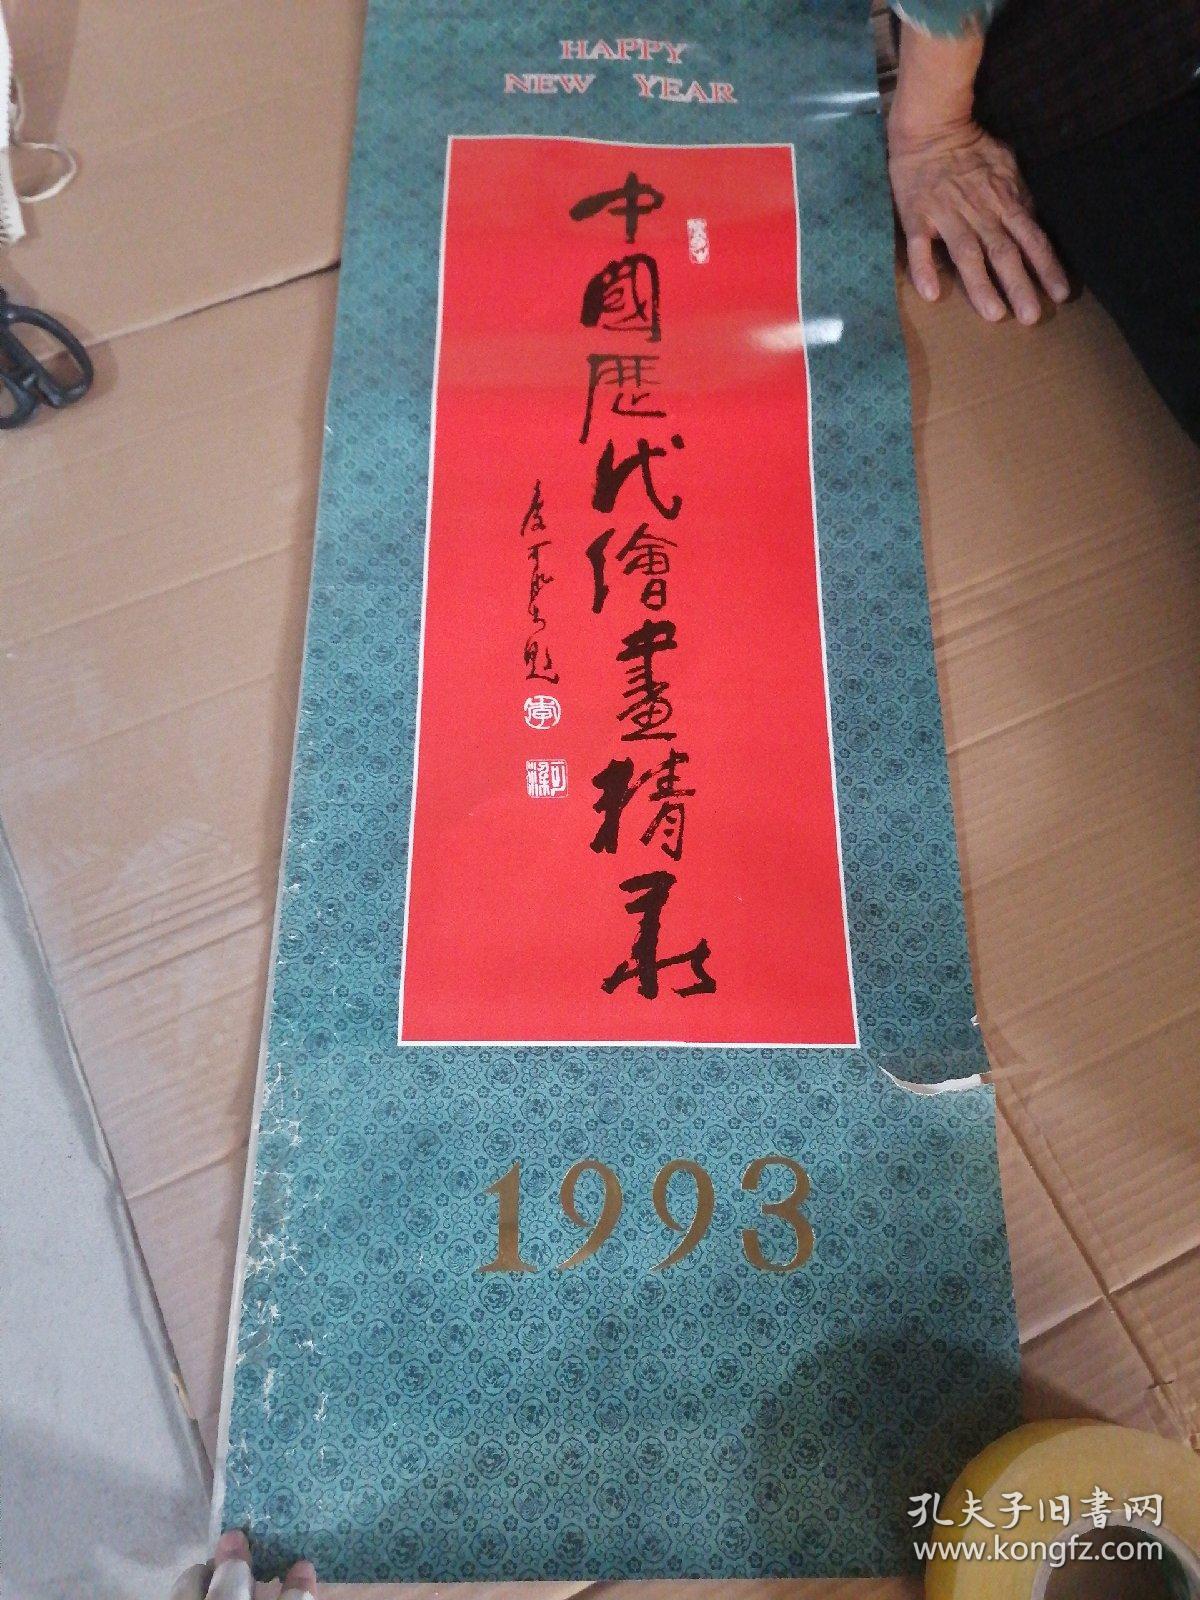 1993年挂历:中国历代绘画精录  13张（破损）